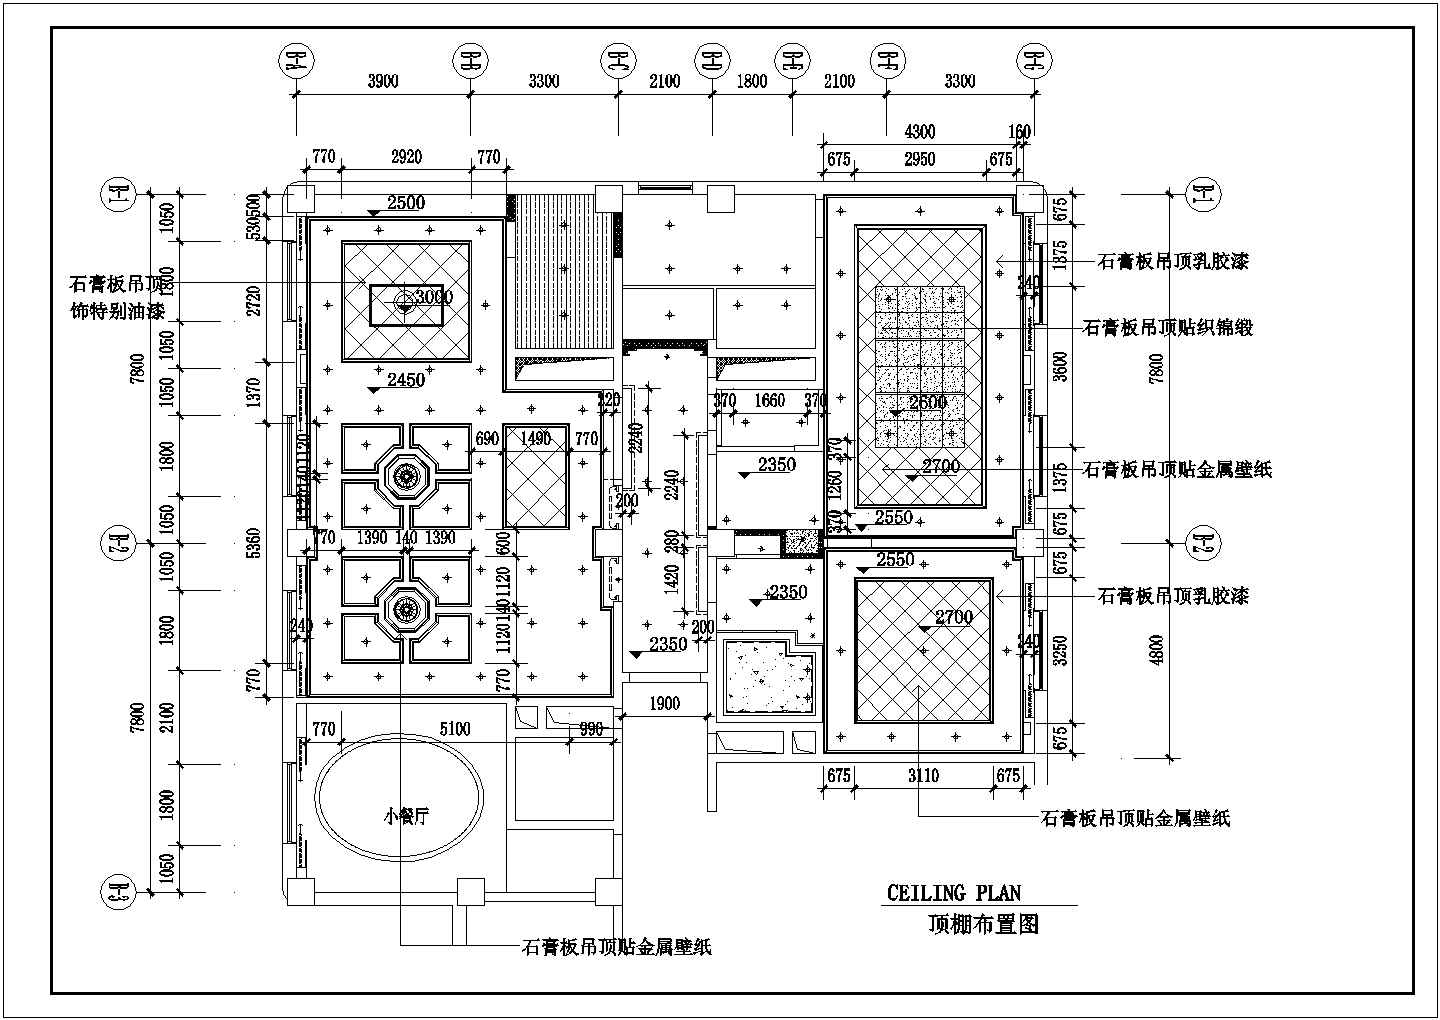 武汉市某四星级酒店总统套房平面装饰布局设计CAD图纸